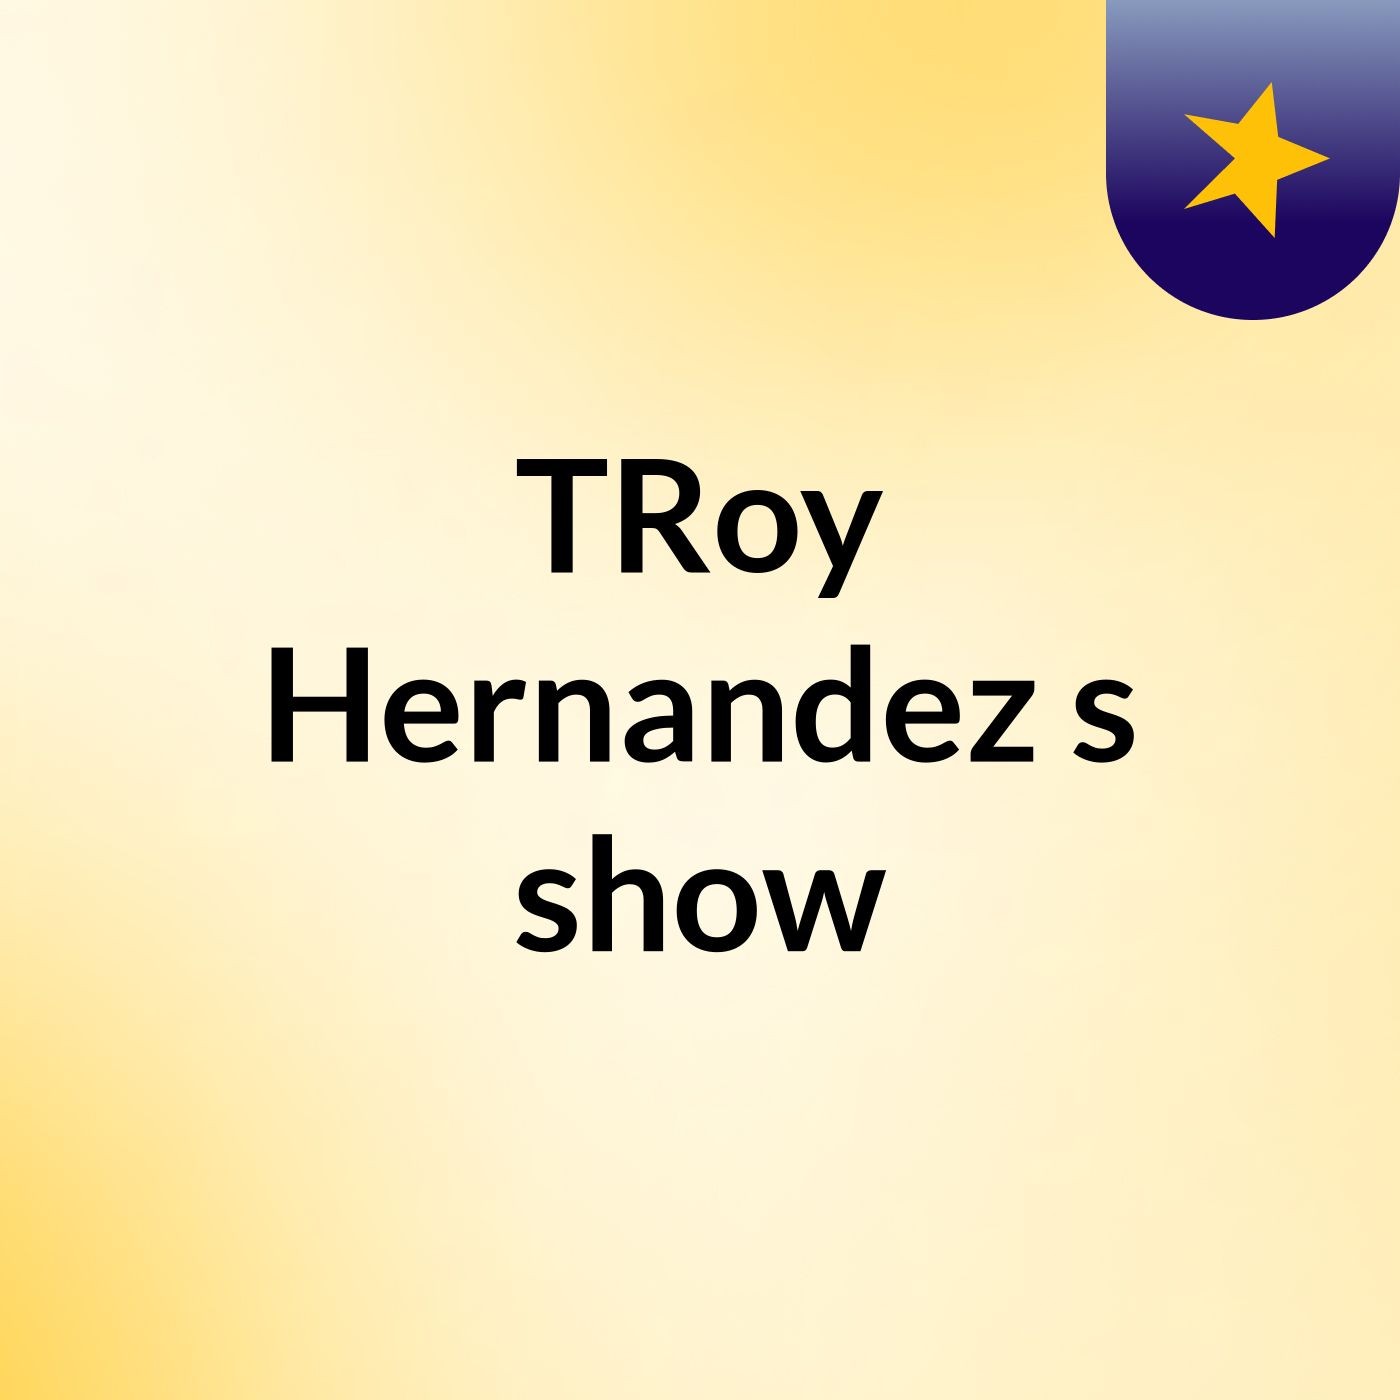 TRoy Hernandez 's show